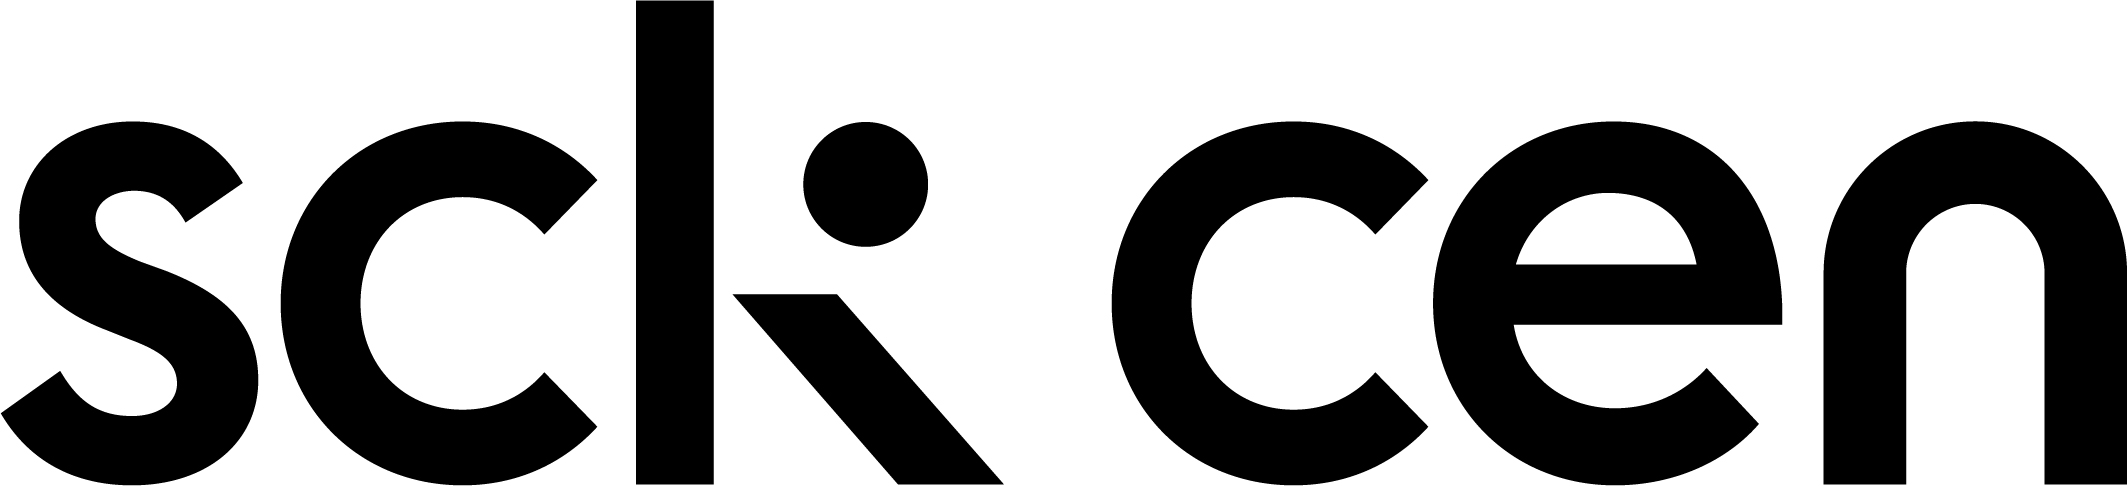 SCK CEN Logo